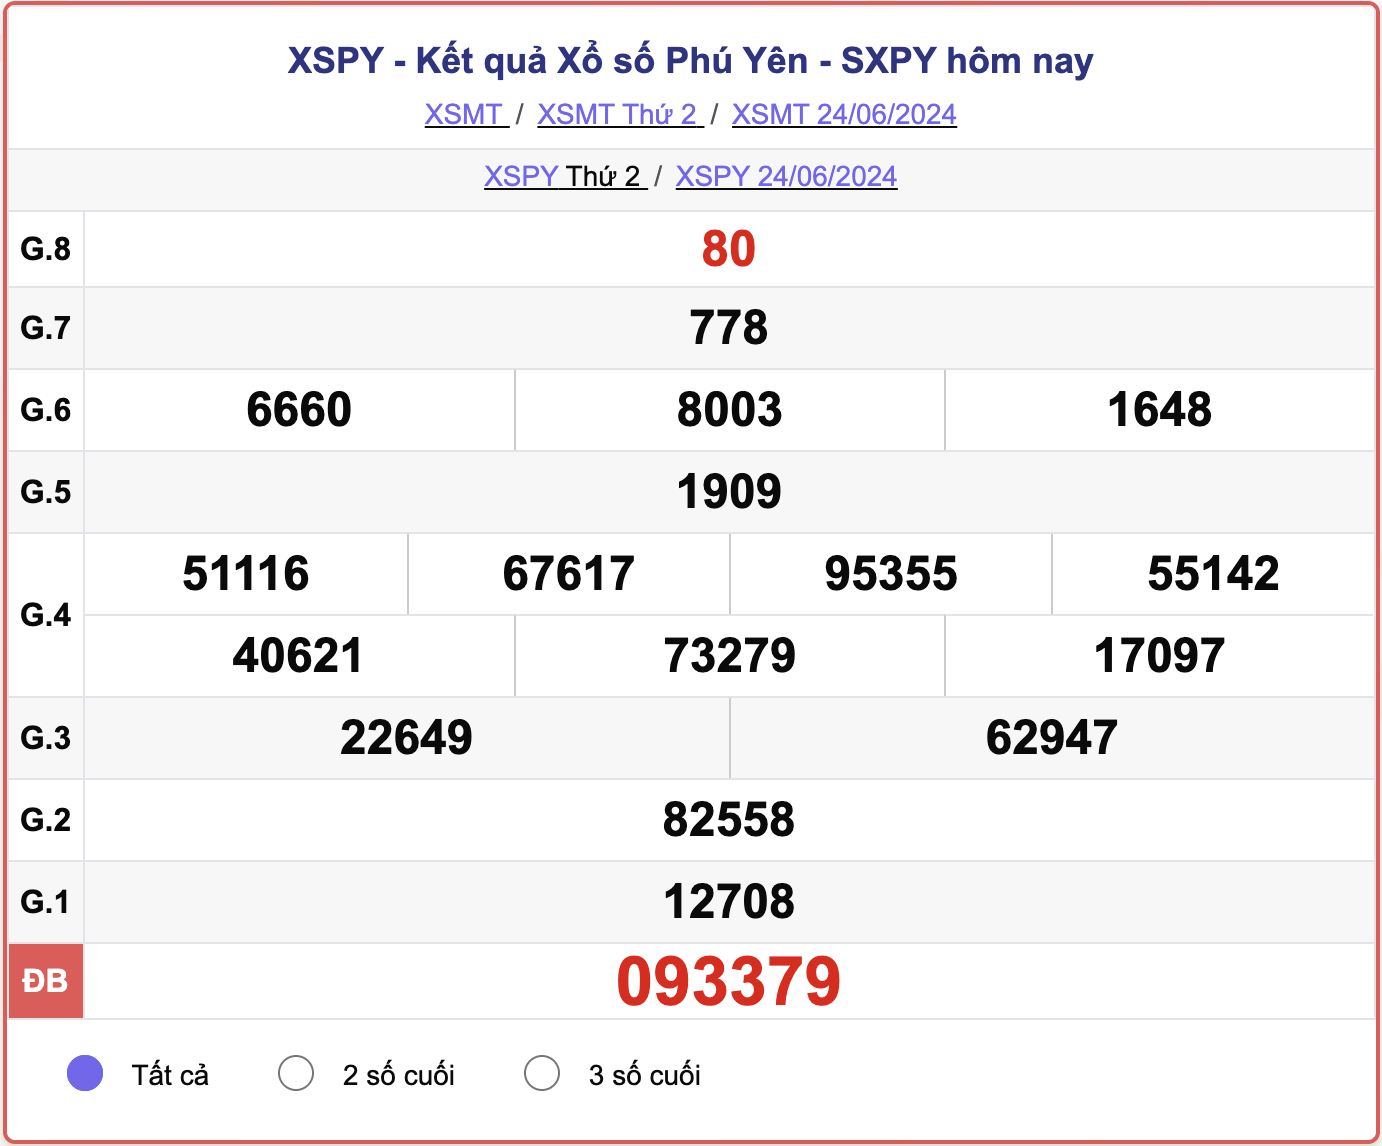 XSPY 24/6, kết quả xổ số Phú Yên hôm nay 24/6/2024.